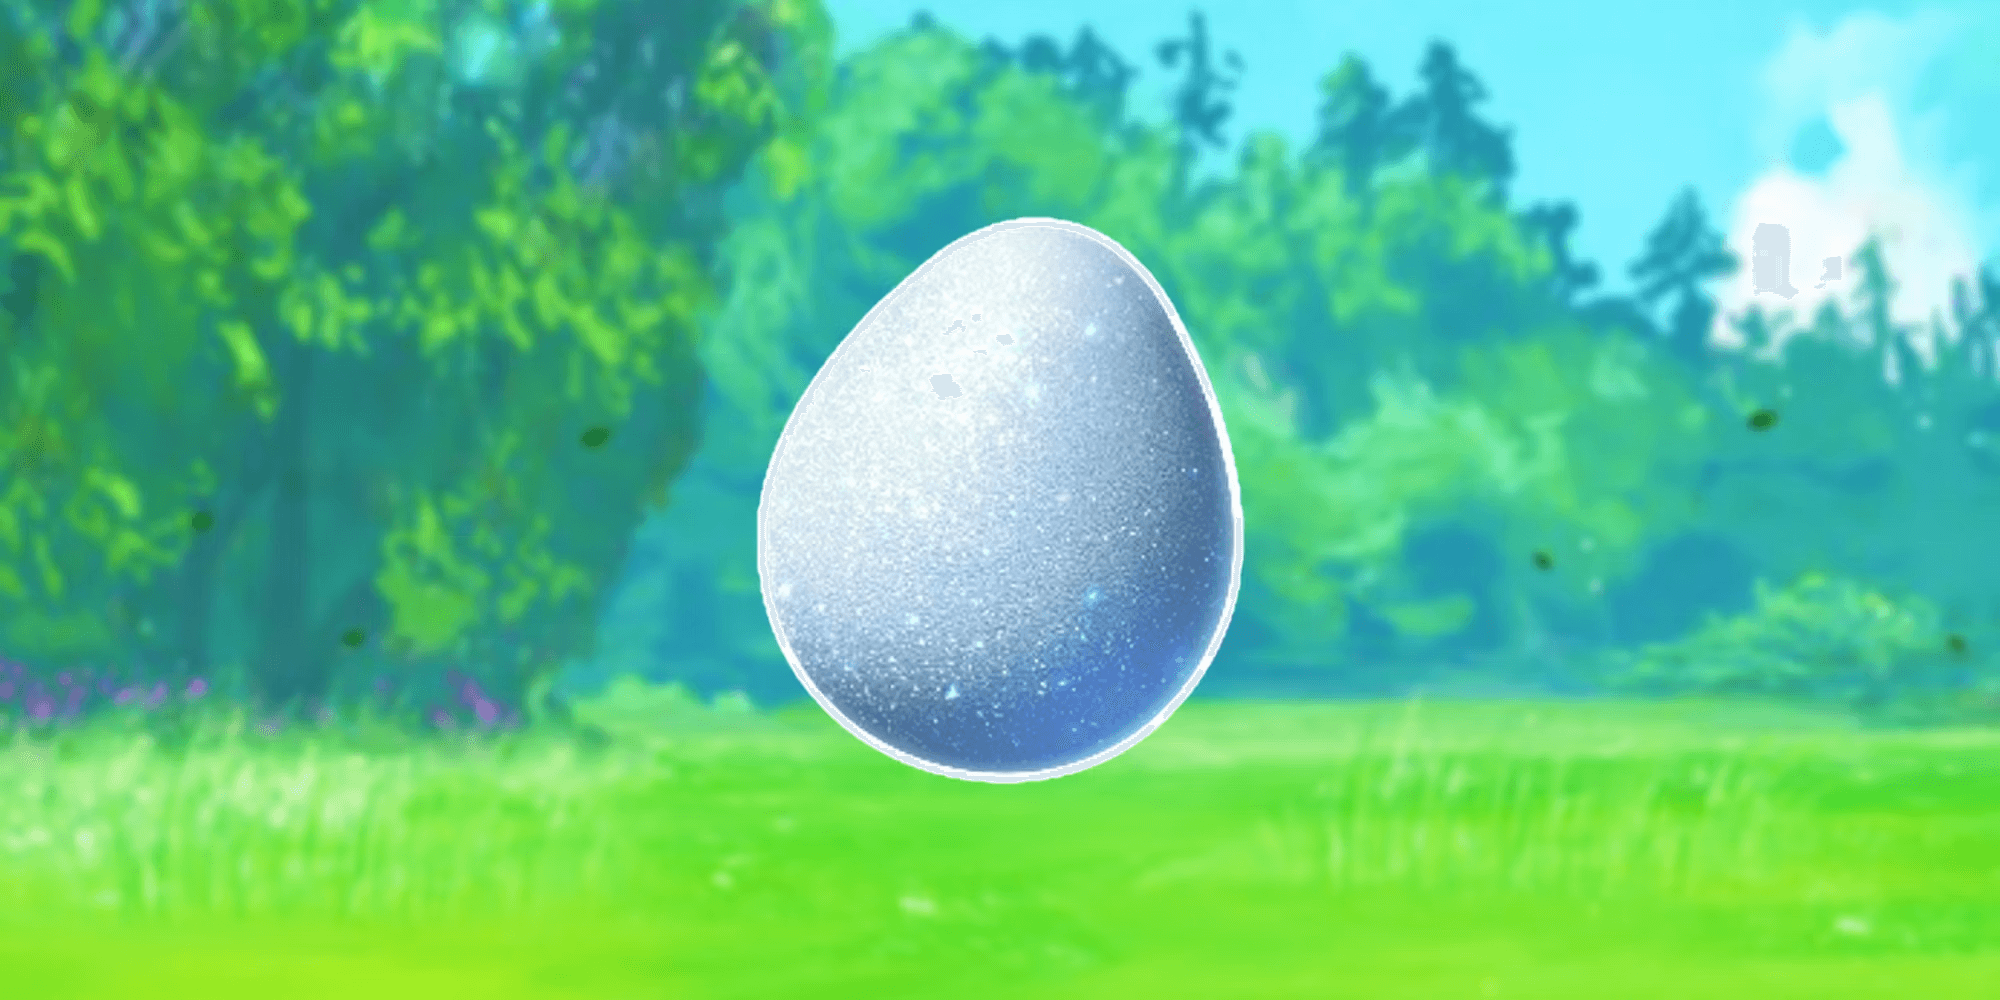 crack a lucky egg